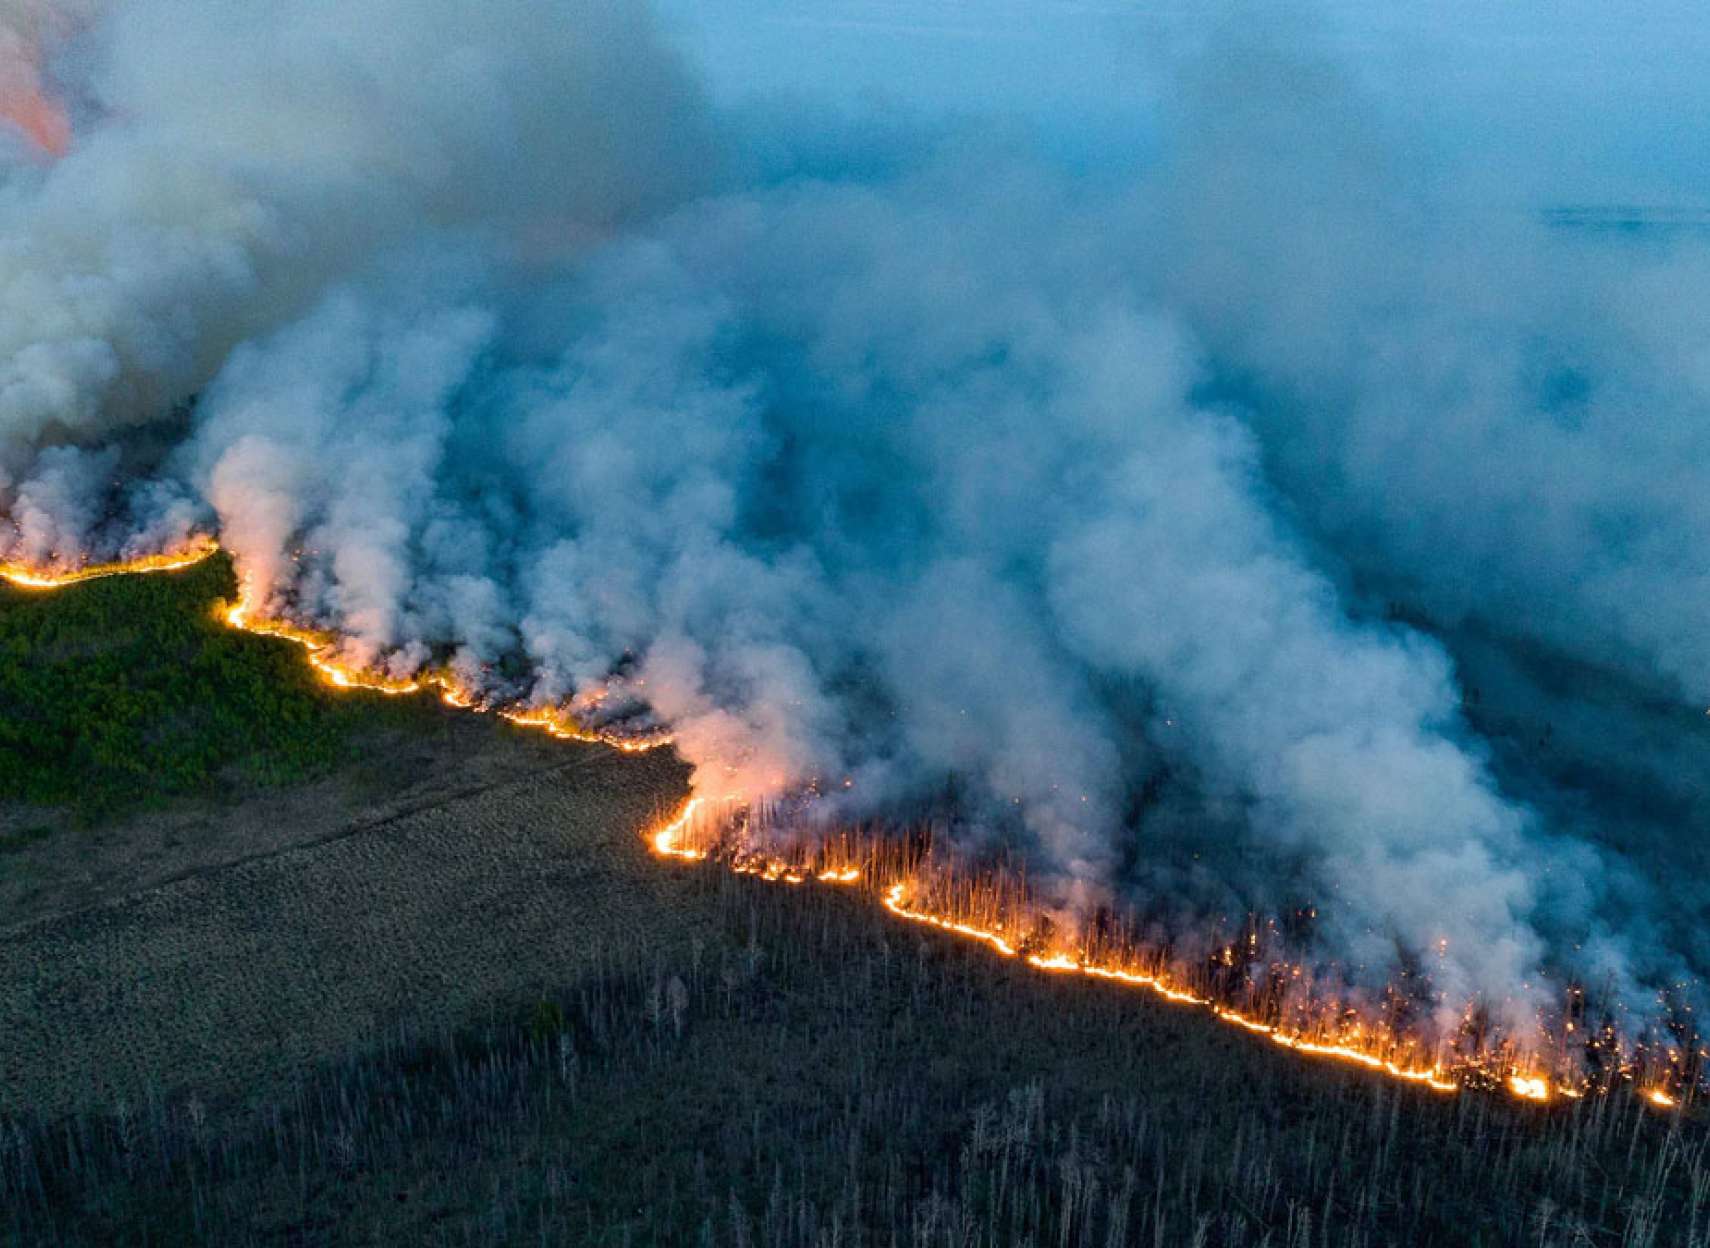 زمستان-شاهد-آتش-سوزی-جنگل-کانادا-رکوردشکنی-تاریخی--سوخته-امسال-به-اندازه-کشور-اسپانیا